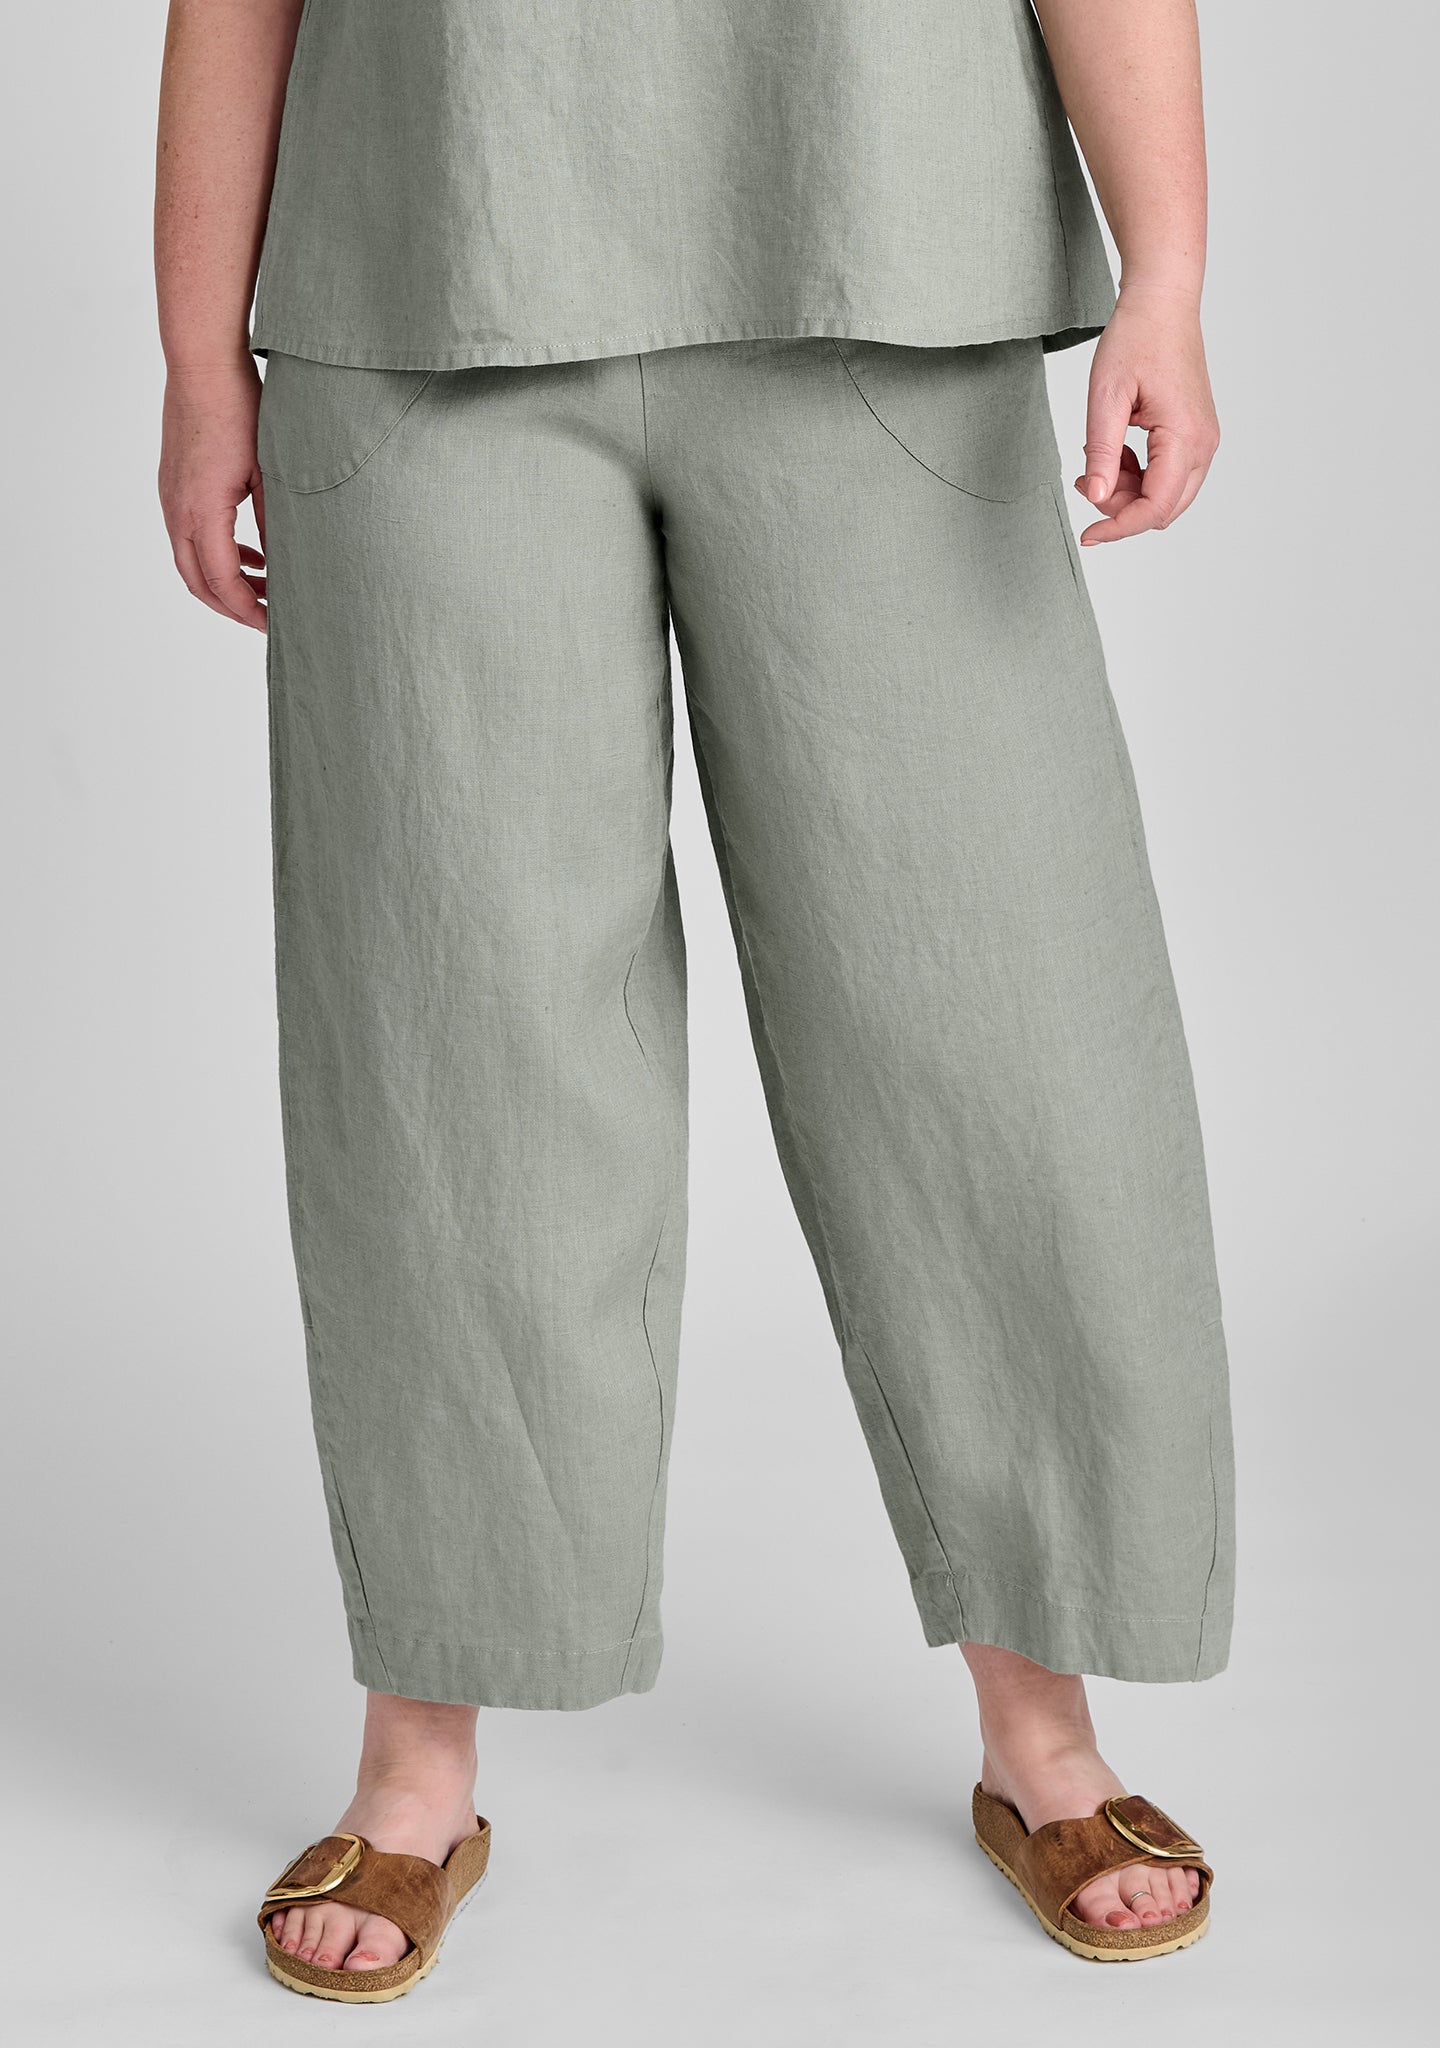 Light grey seersucker high waisted pleated lightweight Women Dress Pants